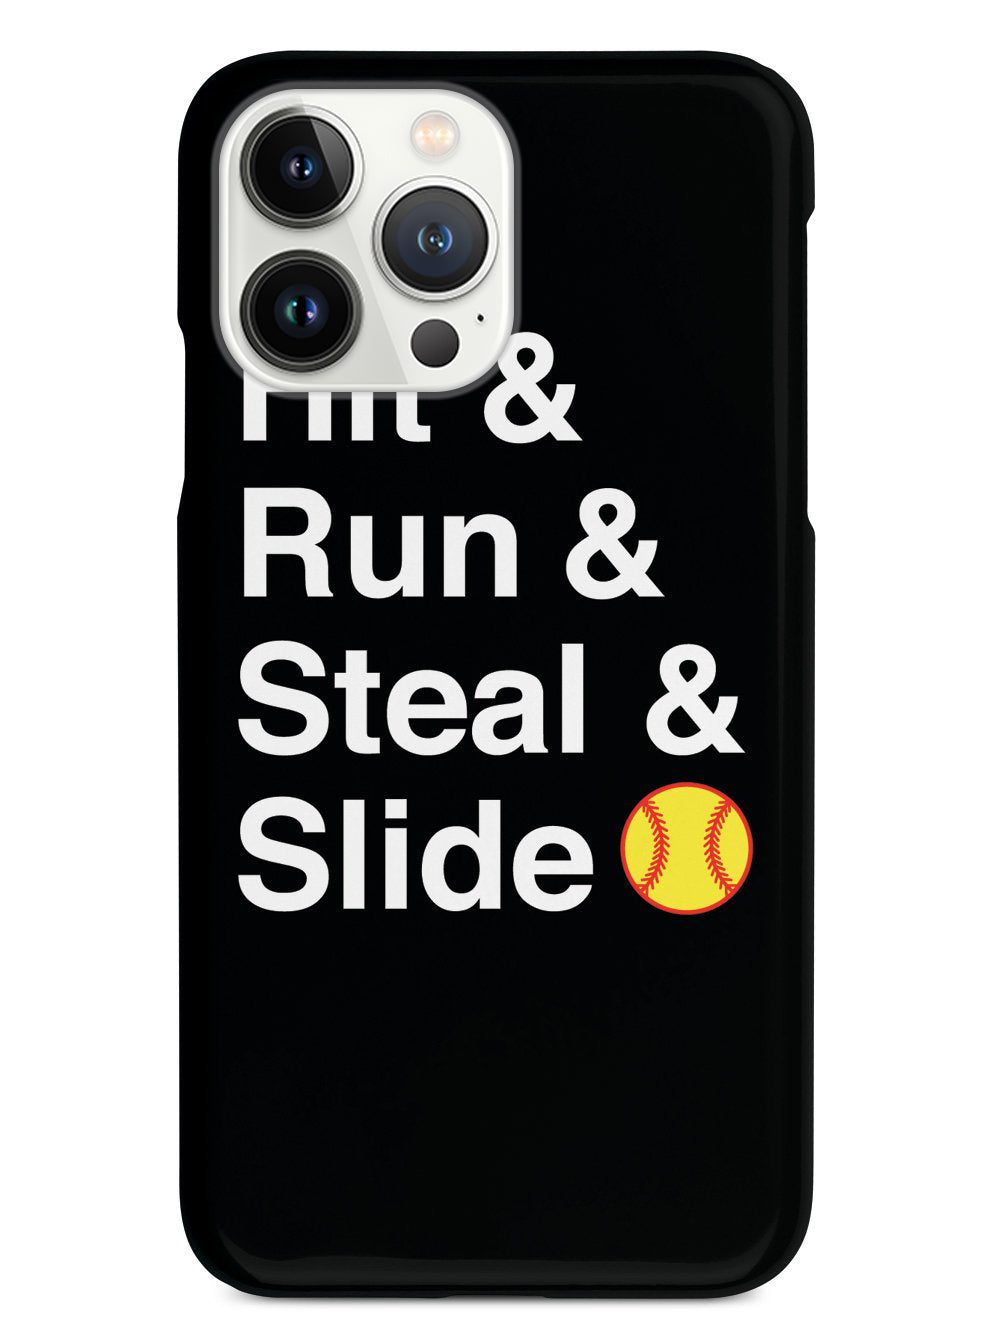 Hit & Run & Steal & Slide - Softball Case